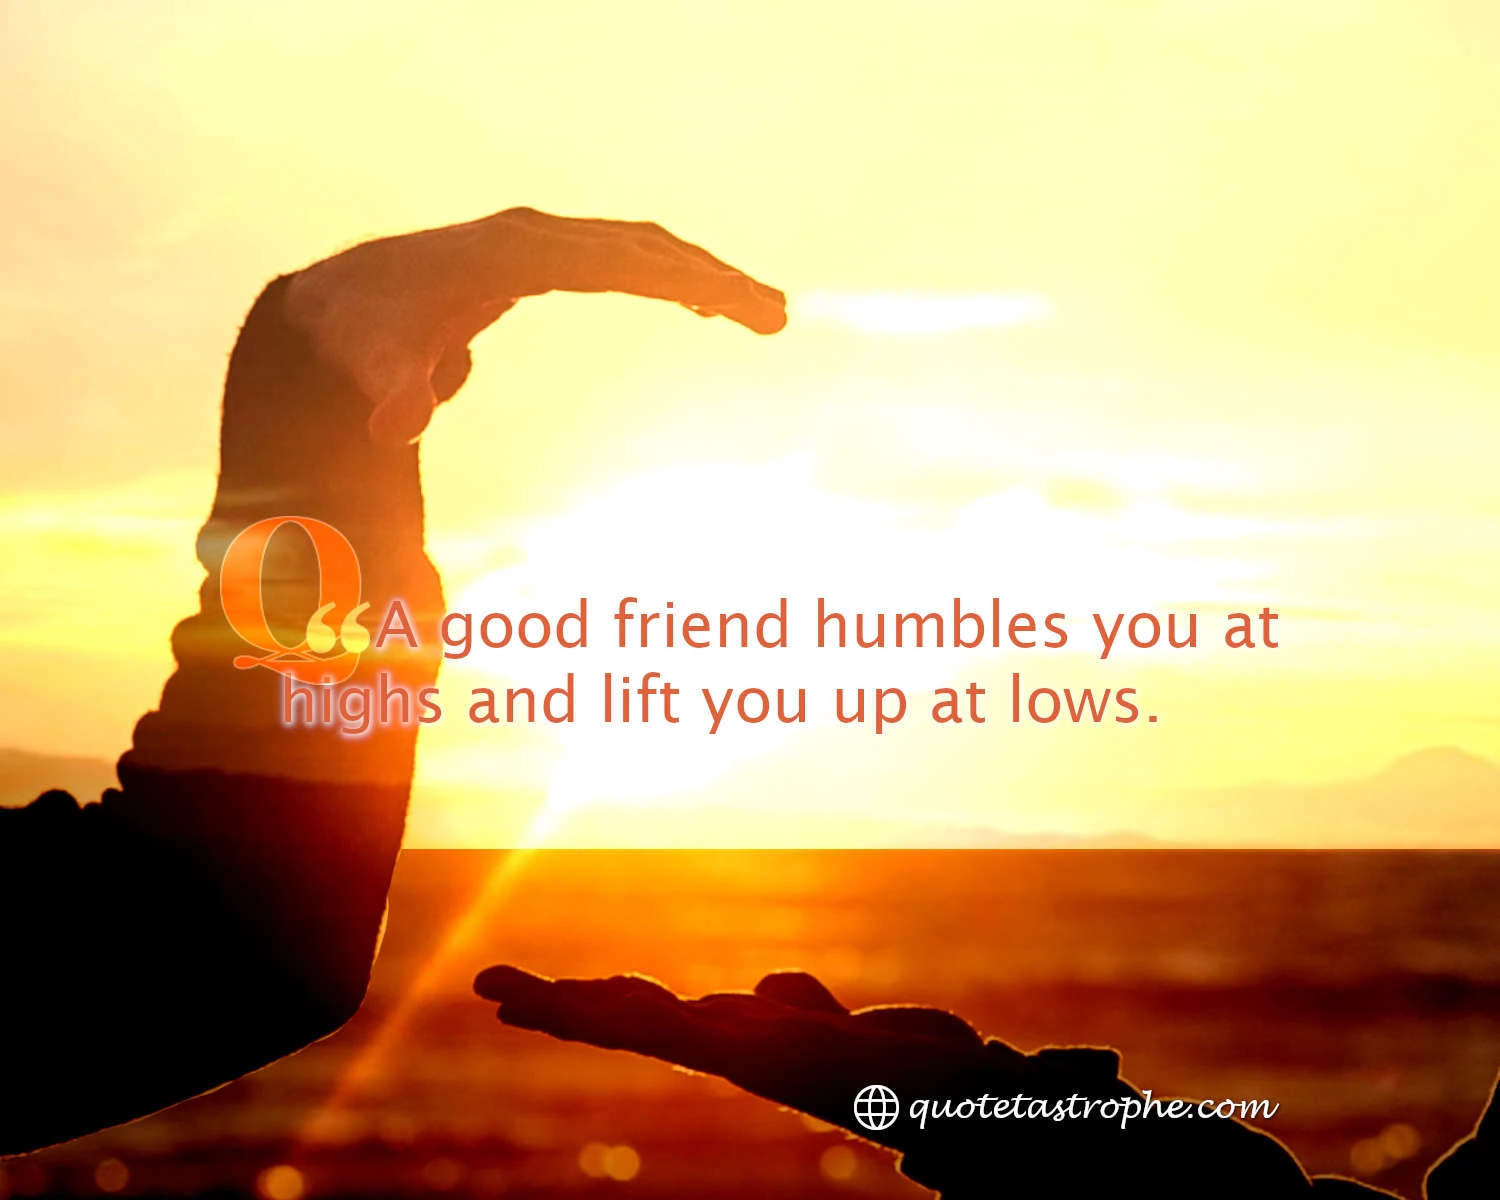 A Good Friend Humbles You